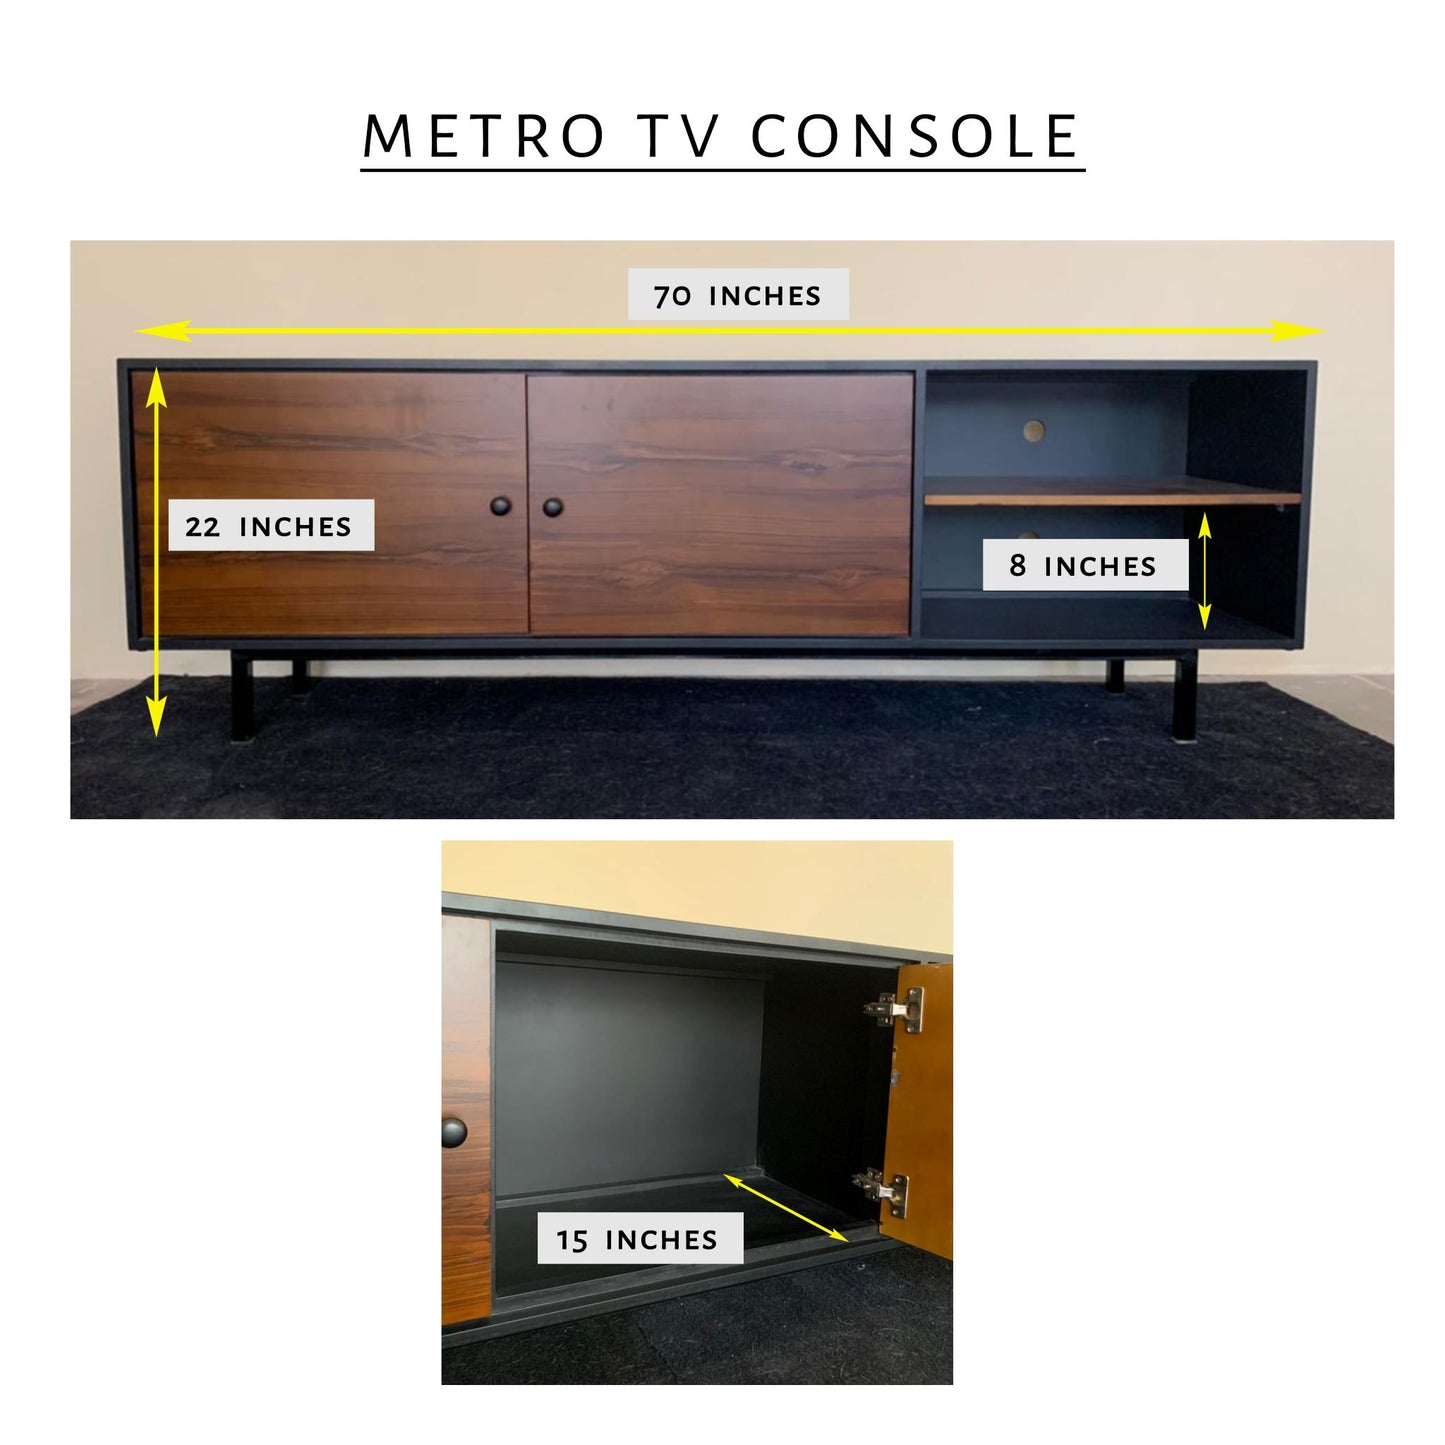 Metro TV Console